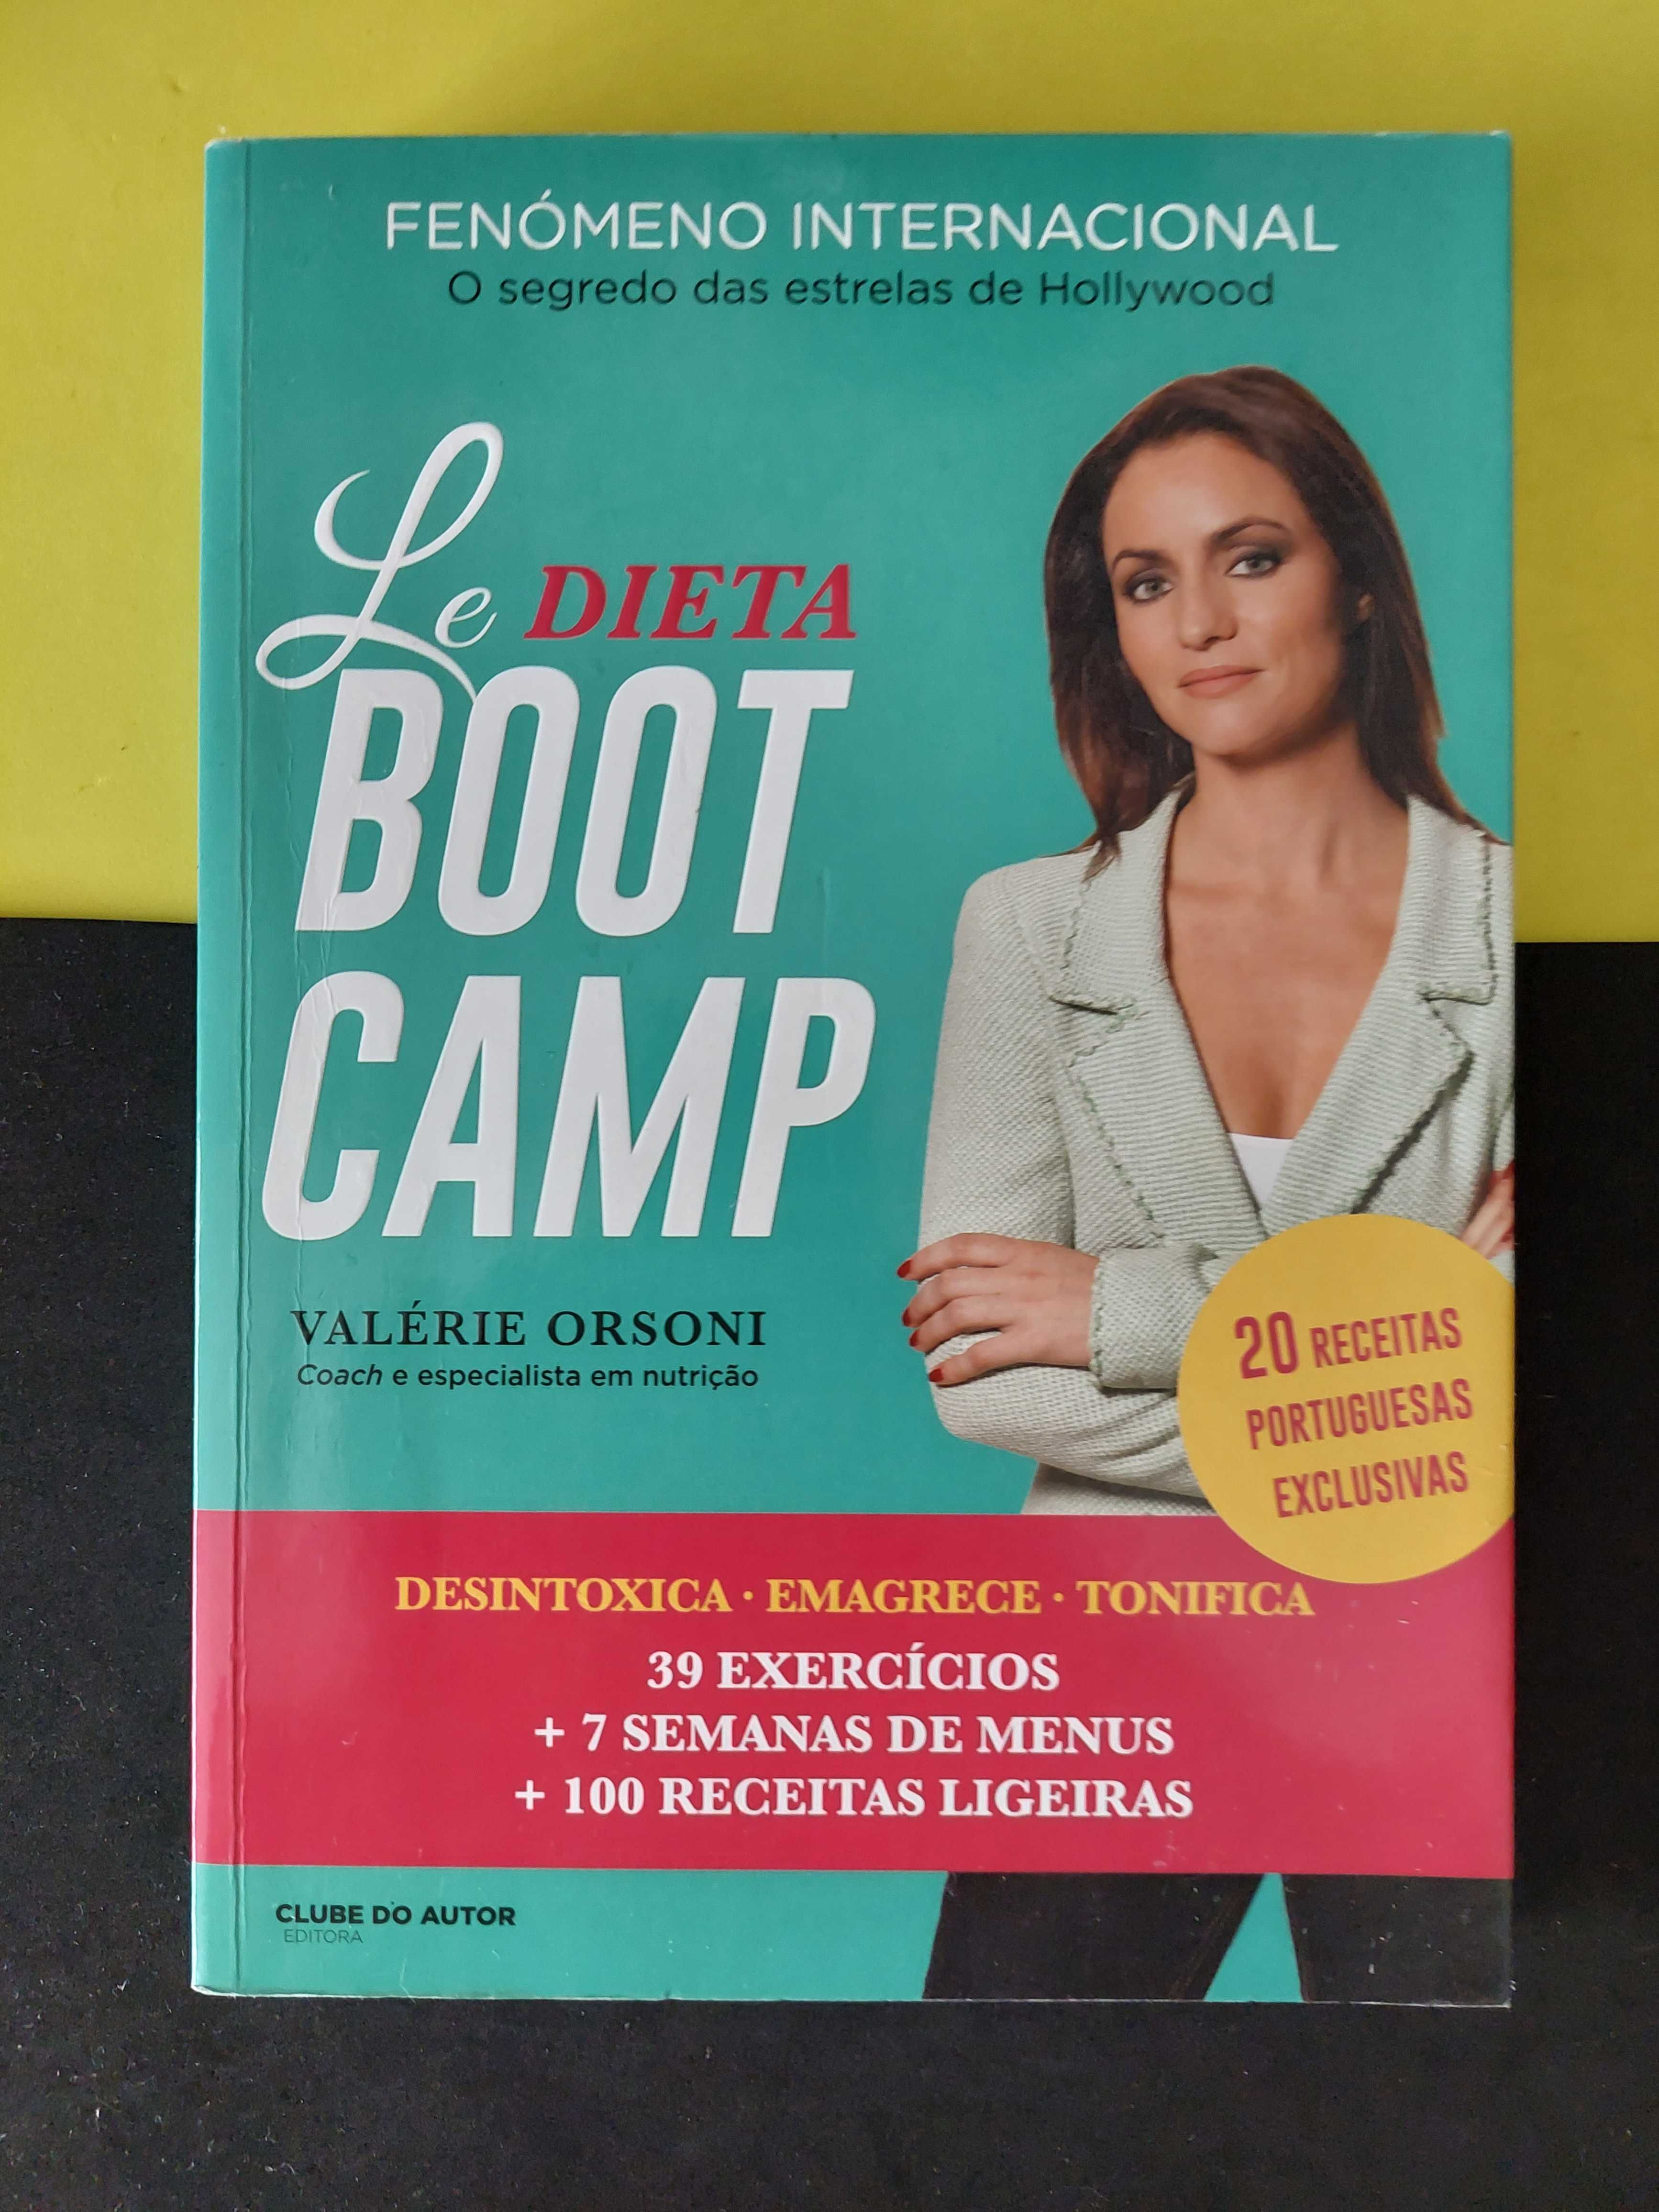 Valérie Orsoni - Dieta Boot Camp